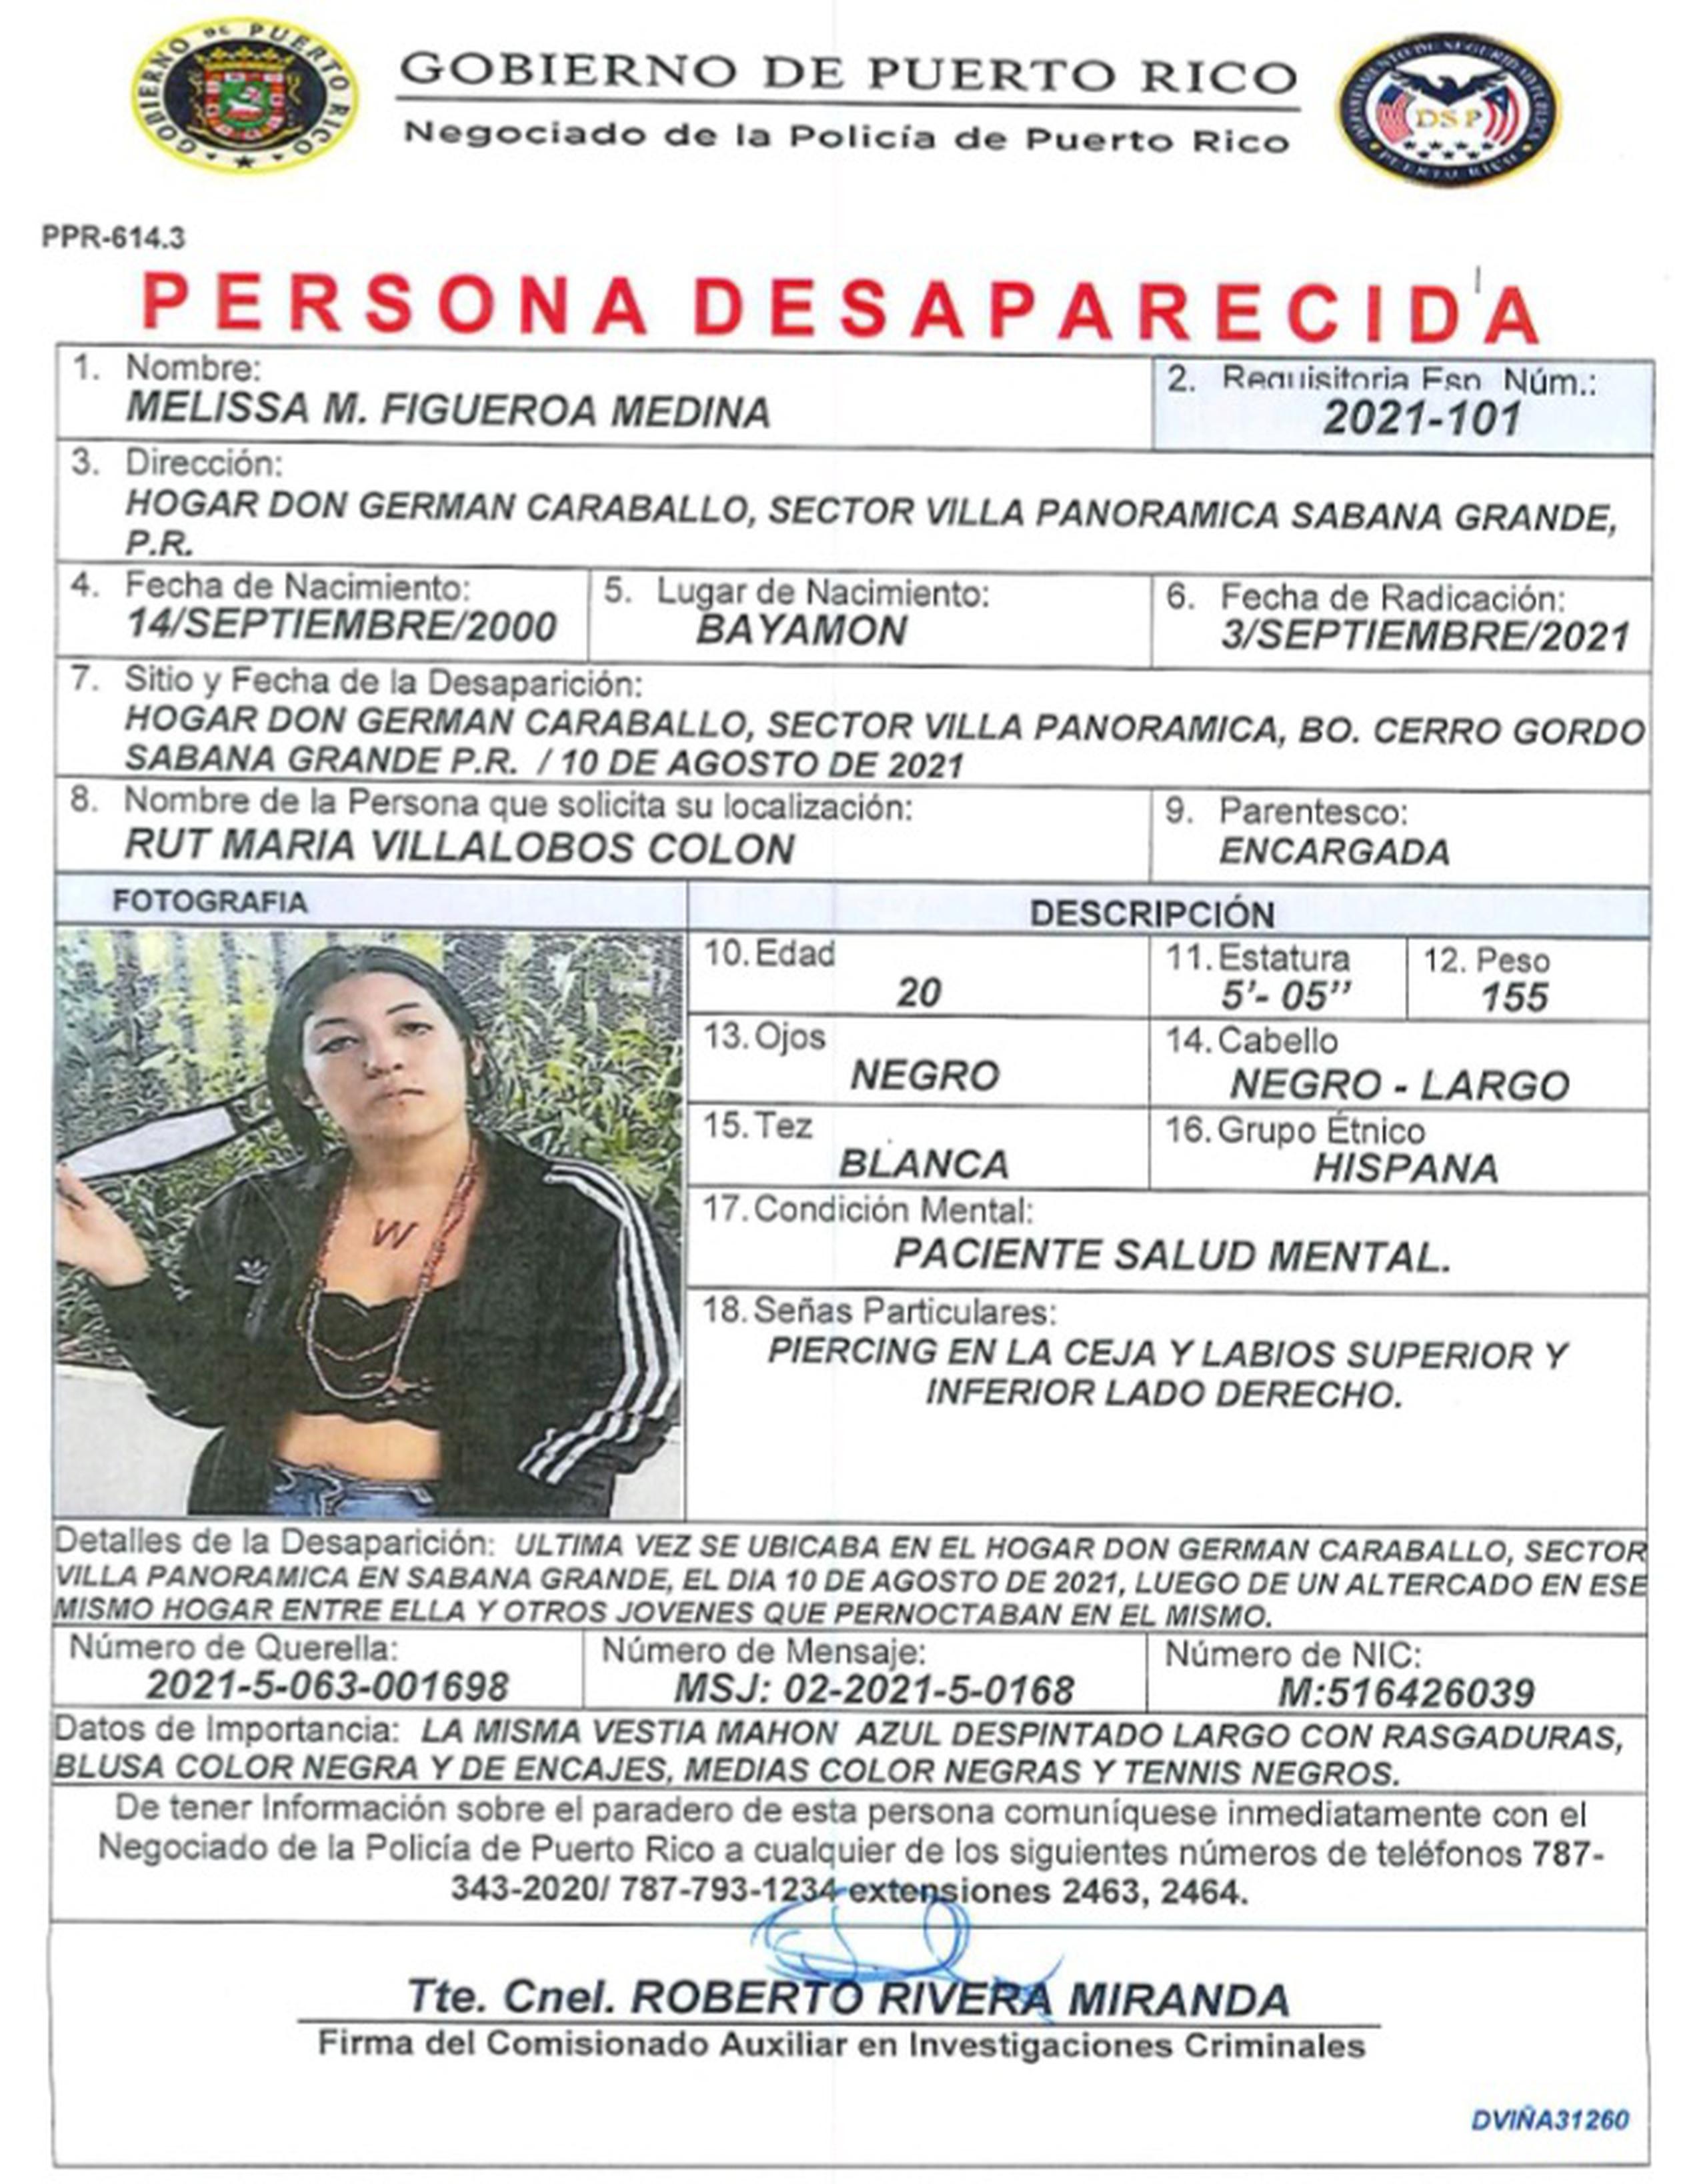 Melissa M. Figueroa Medina de 20 años, está desaparecida desde el 10 de agosto. Si la ha visto llame al (787) 343-2020.